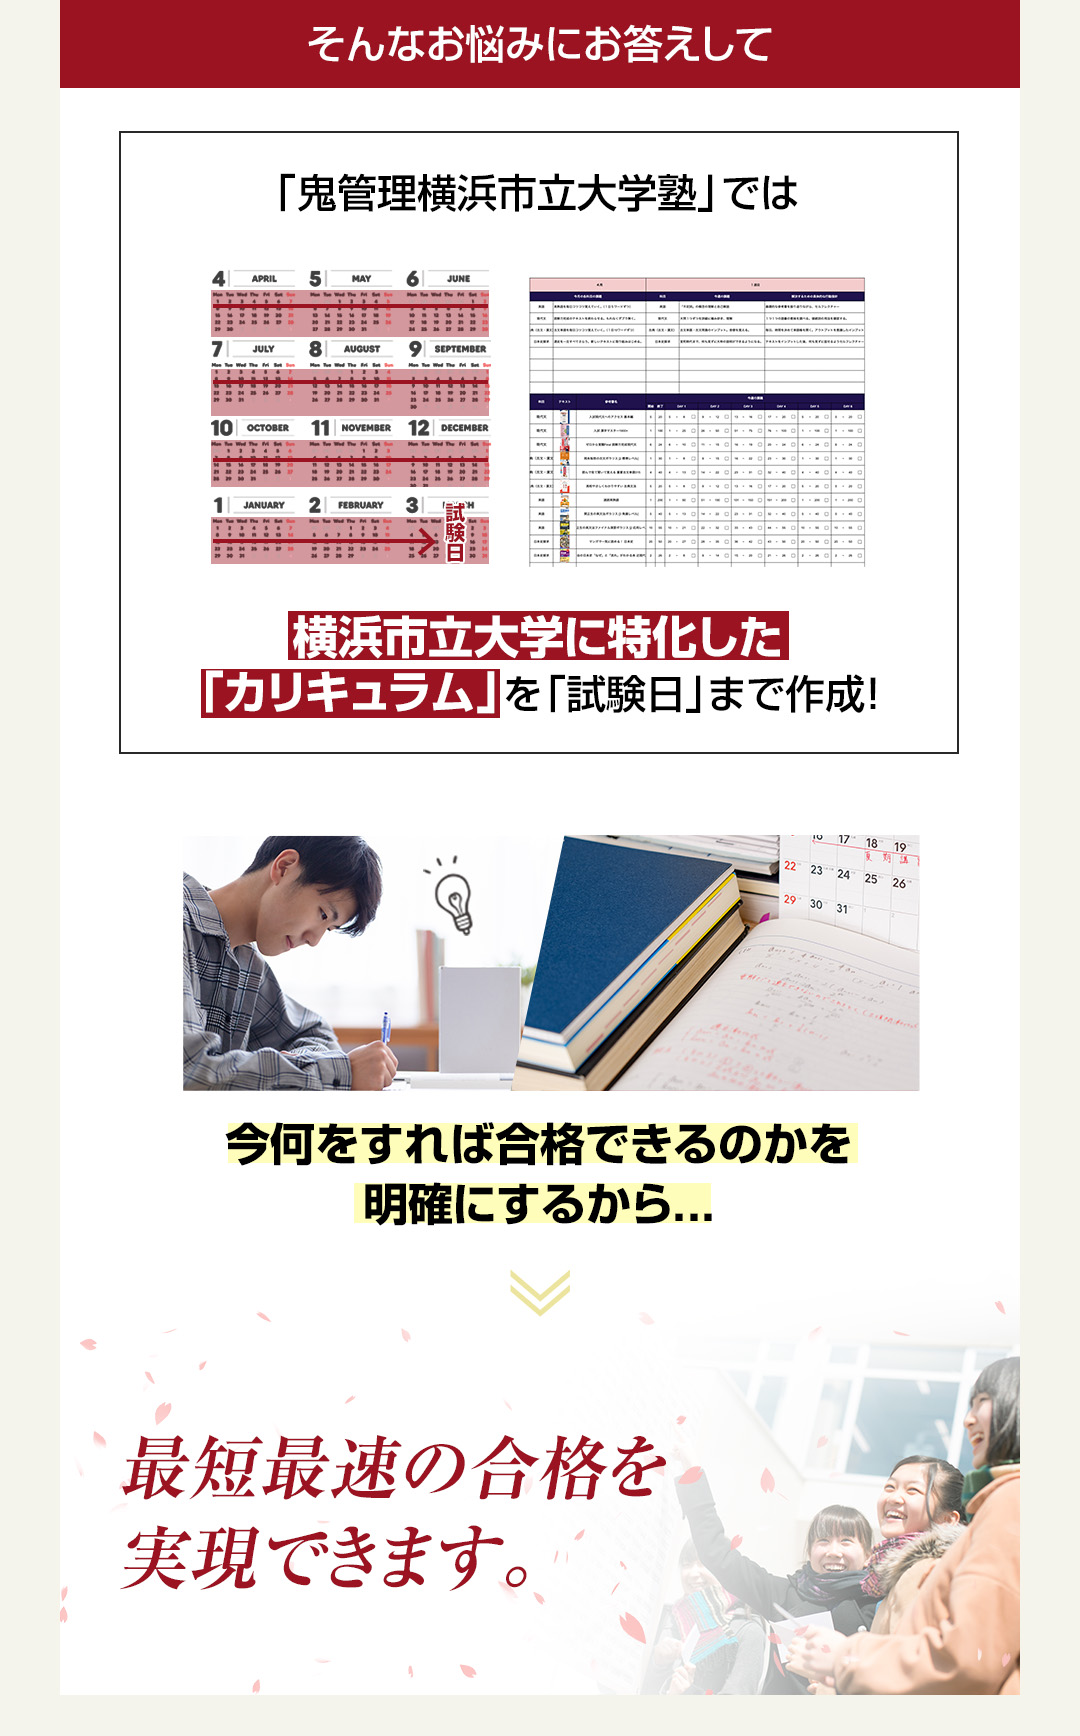 「鬼管理横浜市立大学塾」では横浜市立大学に特化した「カリキュラム」を「試験日」まで作成